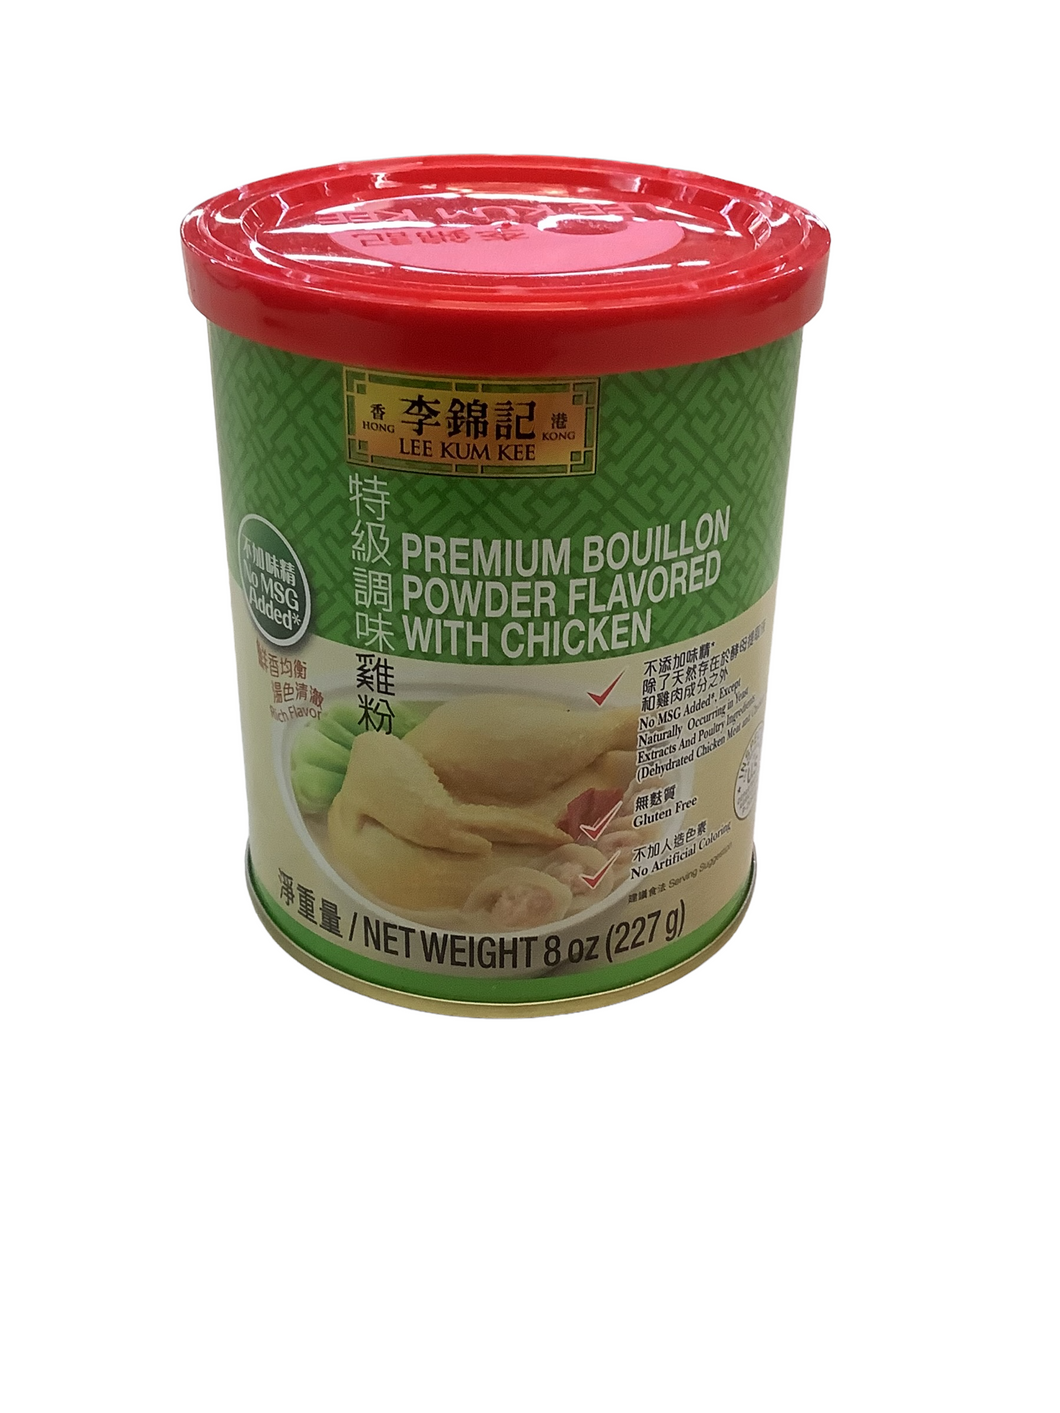 Lee Kum Kee Premium Bouillon Powder Flavored with Chicken